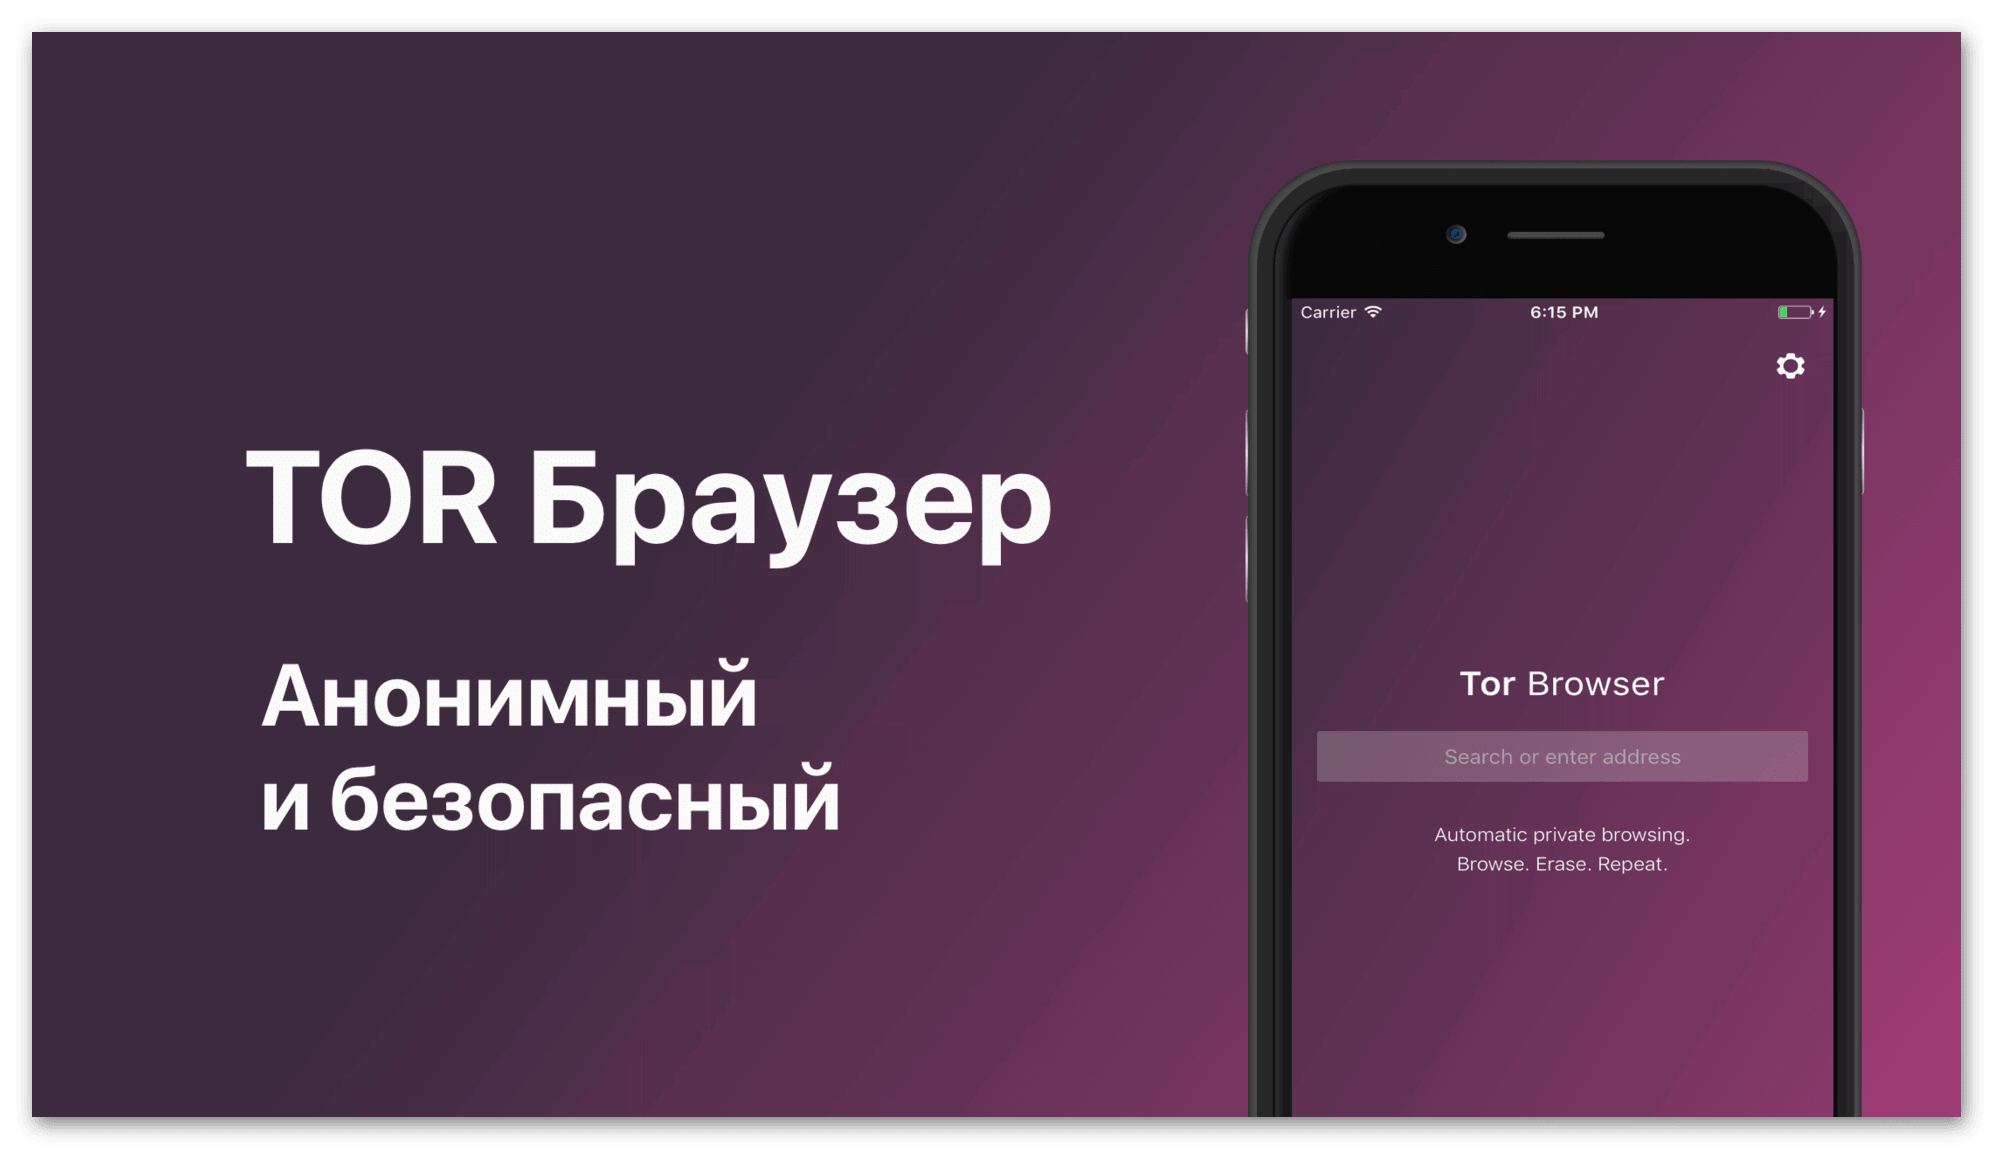 Tor browser как установить на айфон мега скачать tor browser на русском бесплатно торрент mega